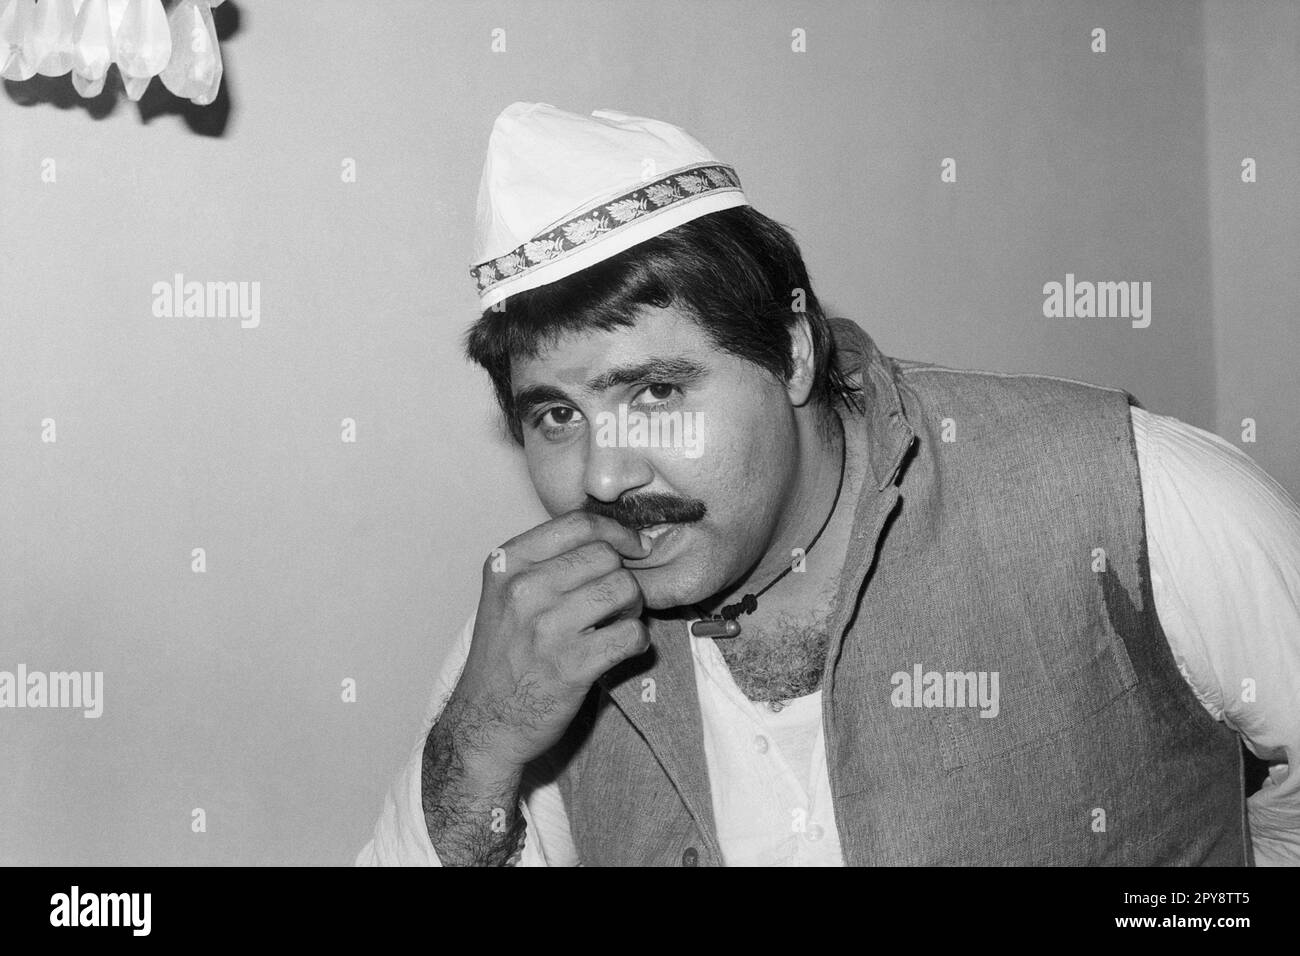 Indio viejo vintage 1980s blanco y negro bollywood cine hindi película actor, India, Satish Shah, actor indio, India Foto de stock